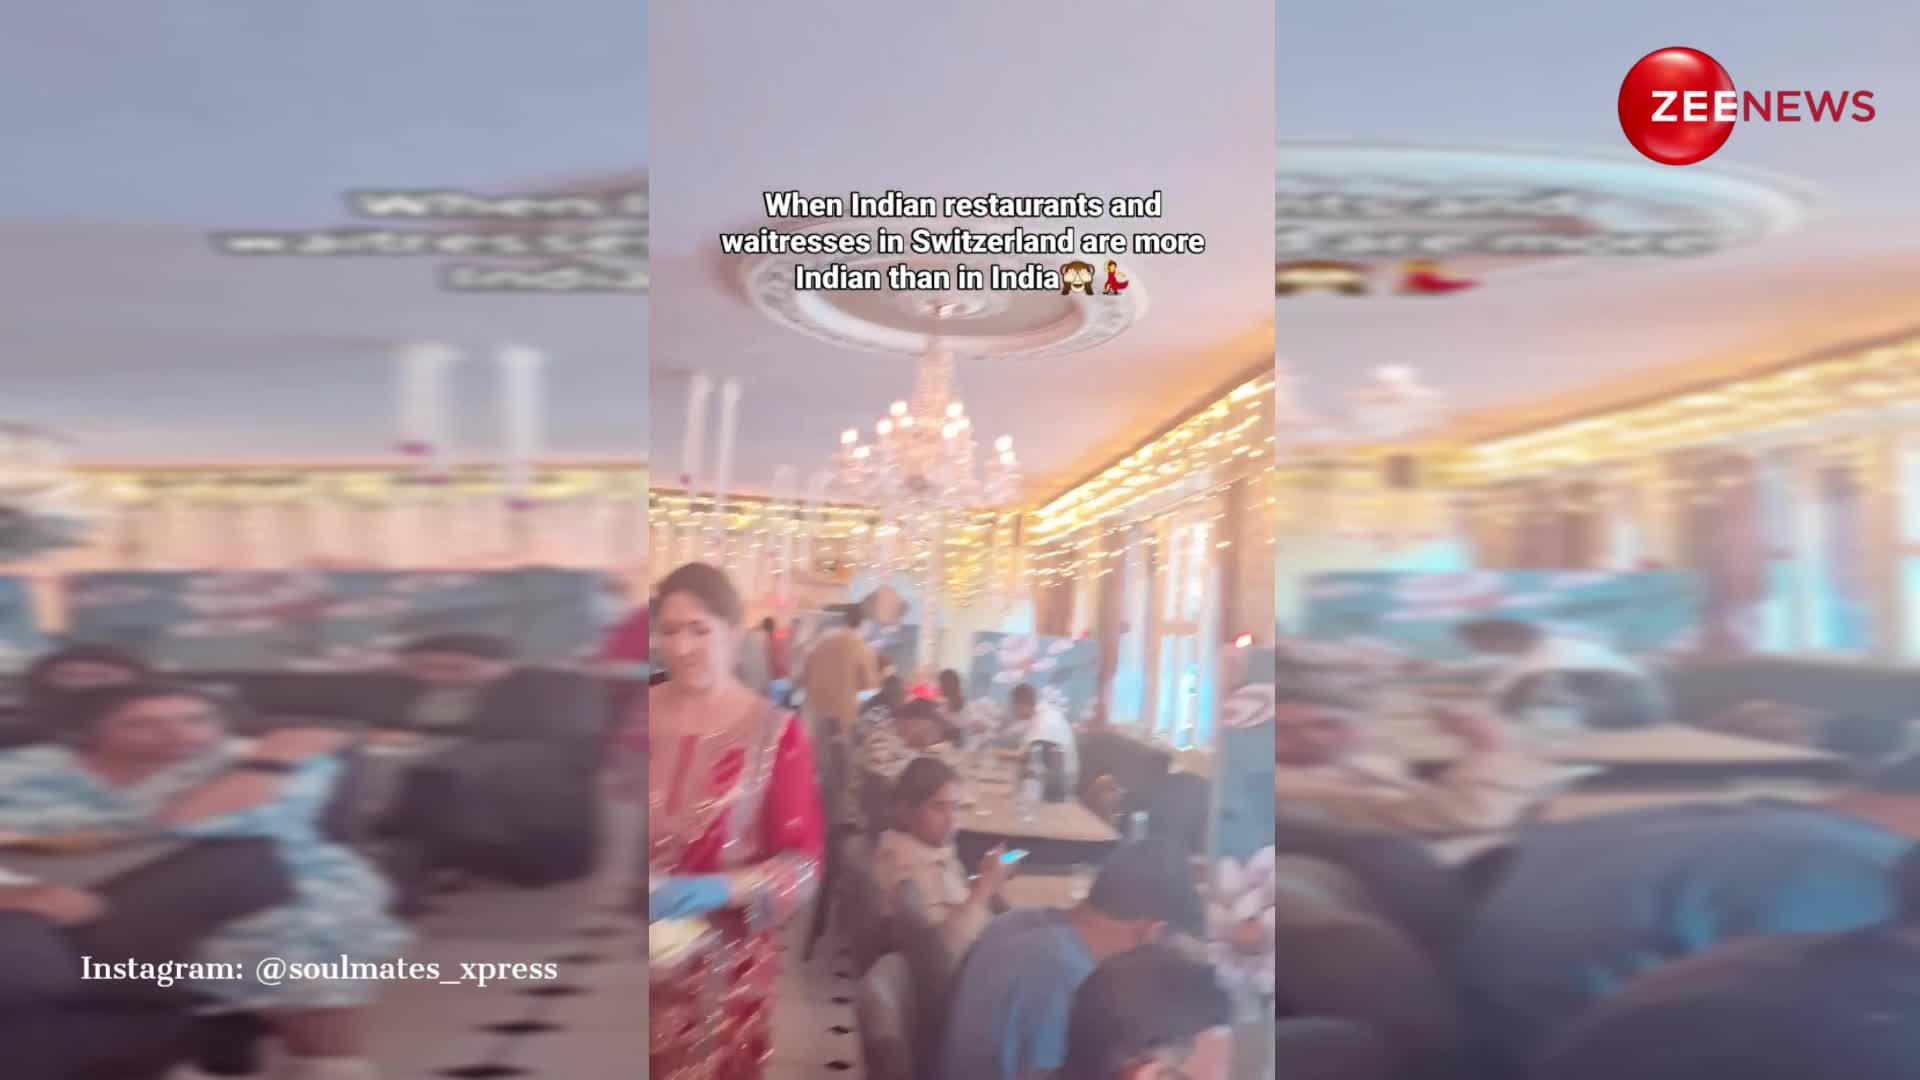 स्विट्जरलैंड के इंडियन रेस्टोरेंट में भारतीय सूट-सलवार पहने दिखीं विदेशी वेट्रेस, देख लोगों के उड़ गए होश